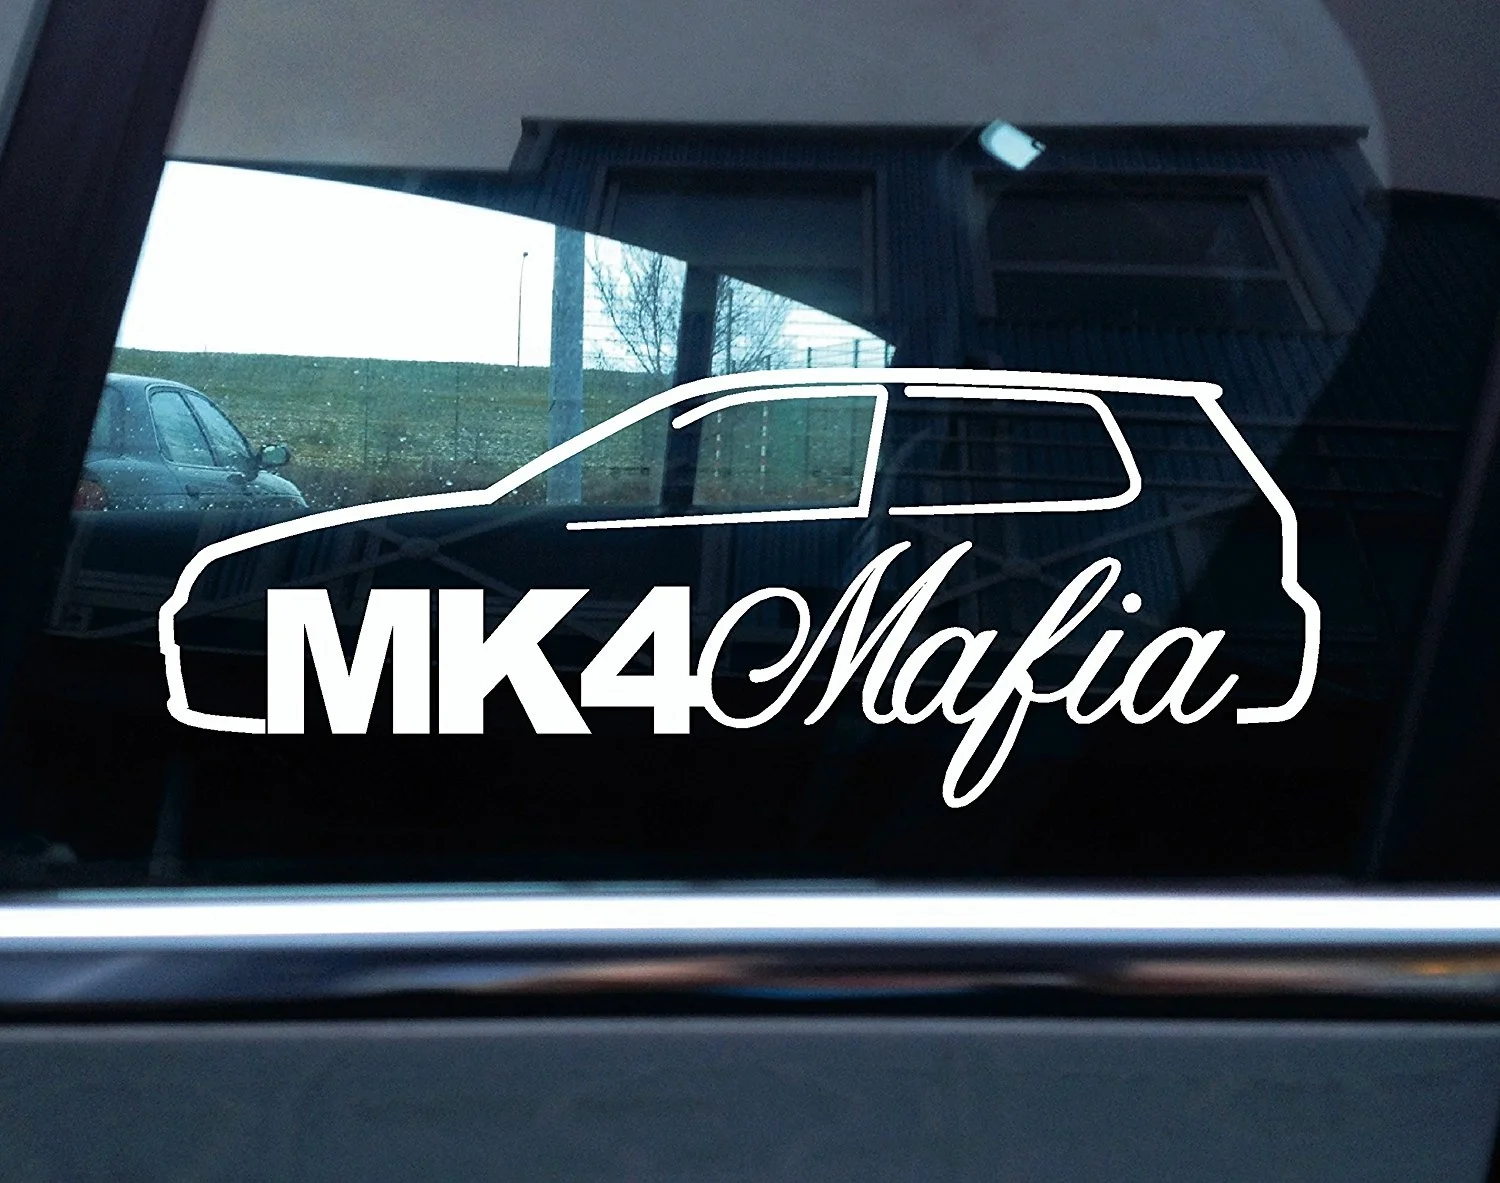 

Виниловая наклейка для Mk4, мафия, на основе Vw Golf Mk4 R32 ,GTI, стикер для стайлинга автомобиля, наклейка на компьютер